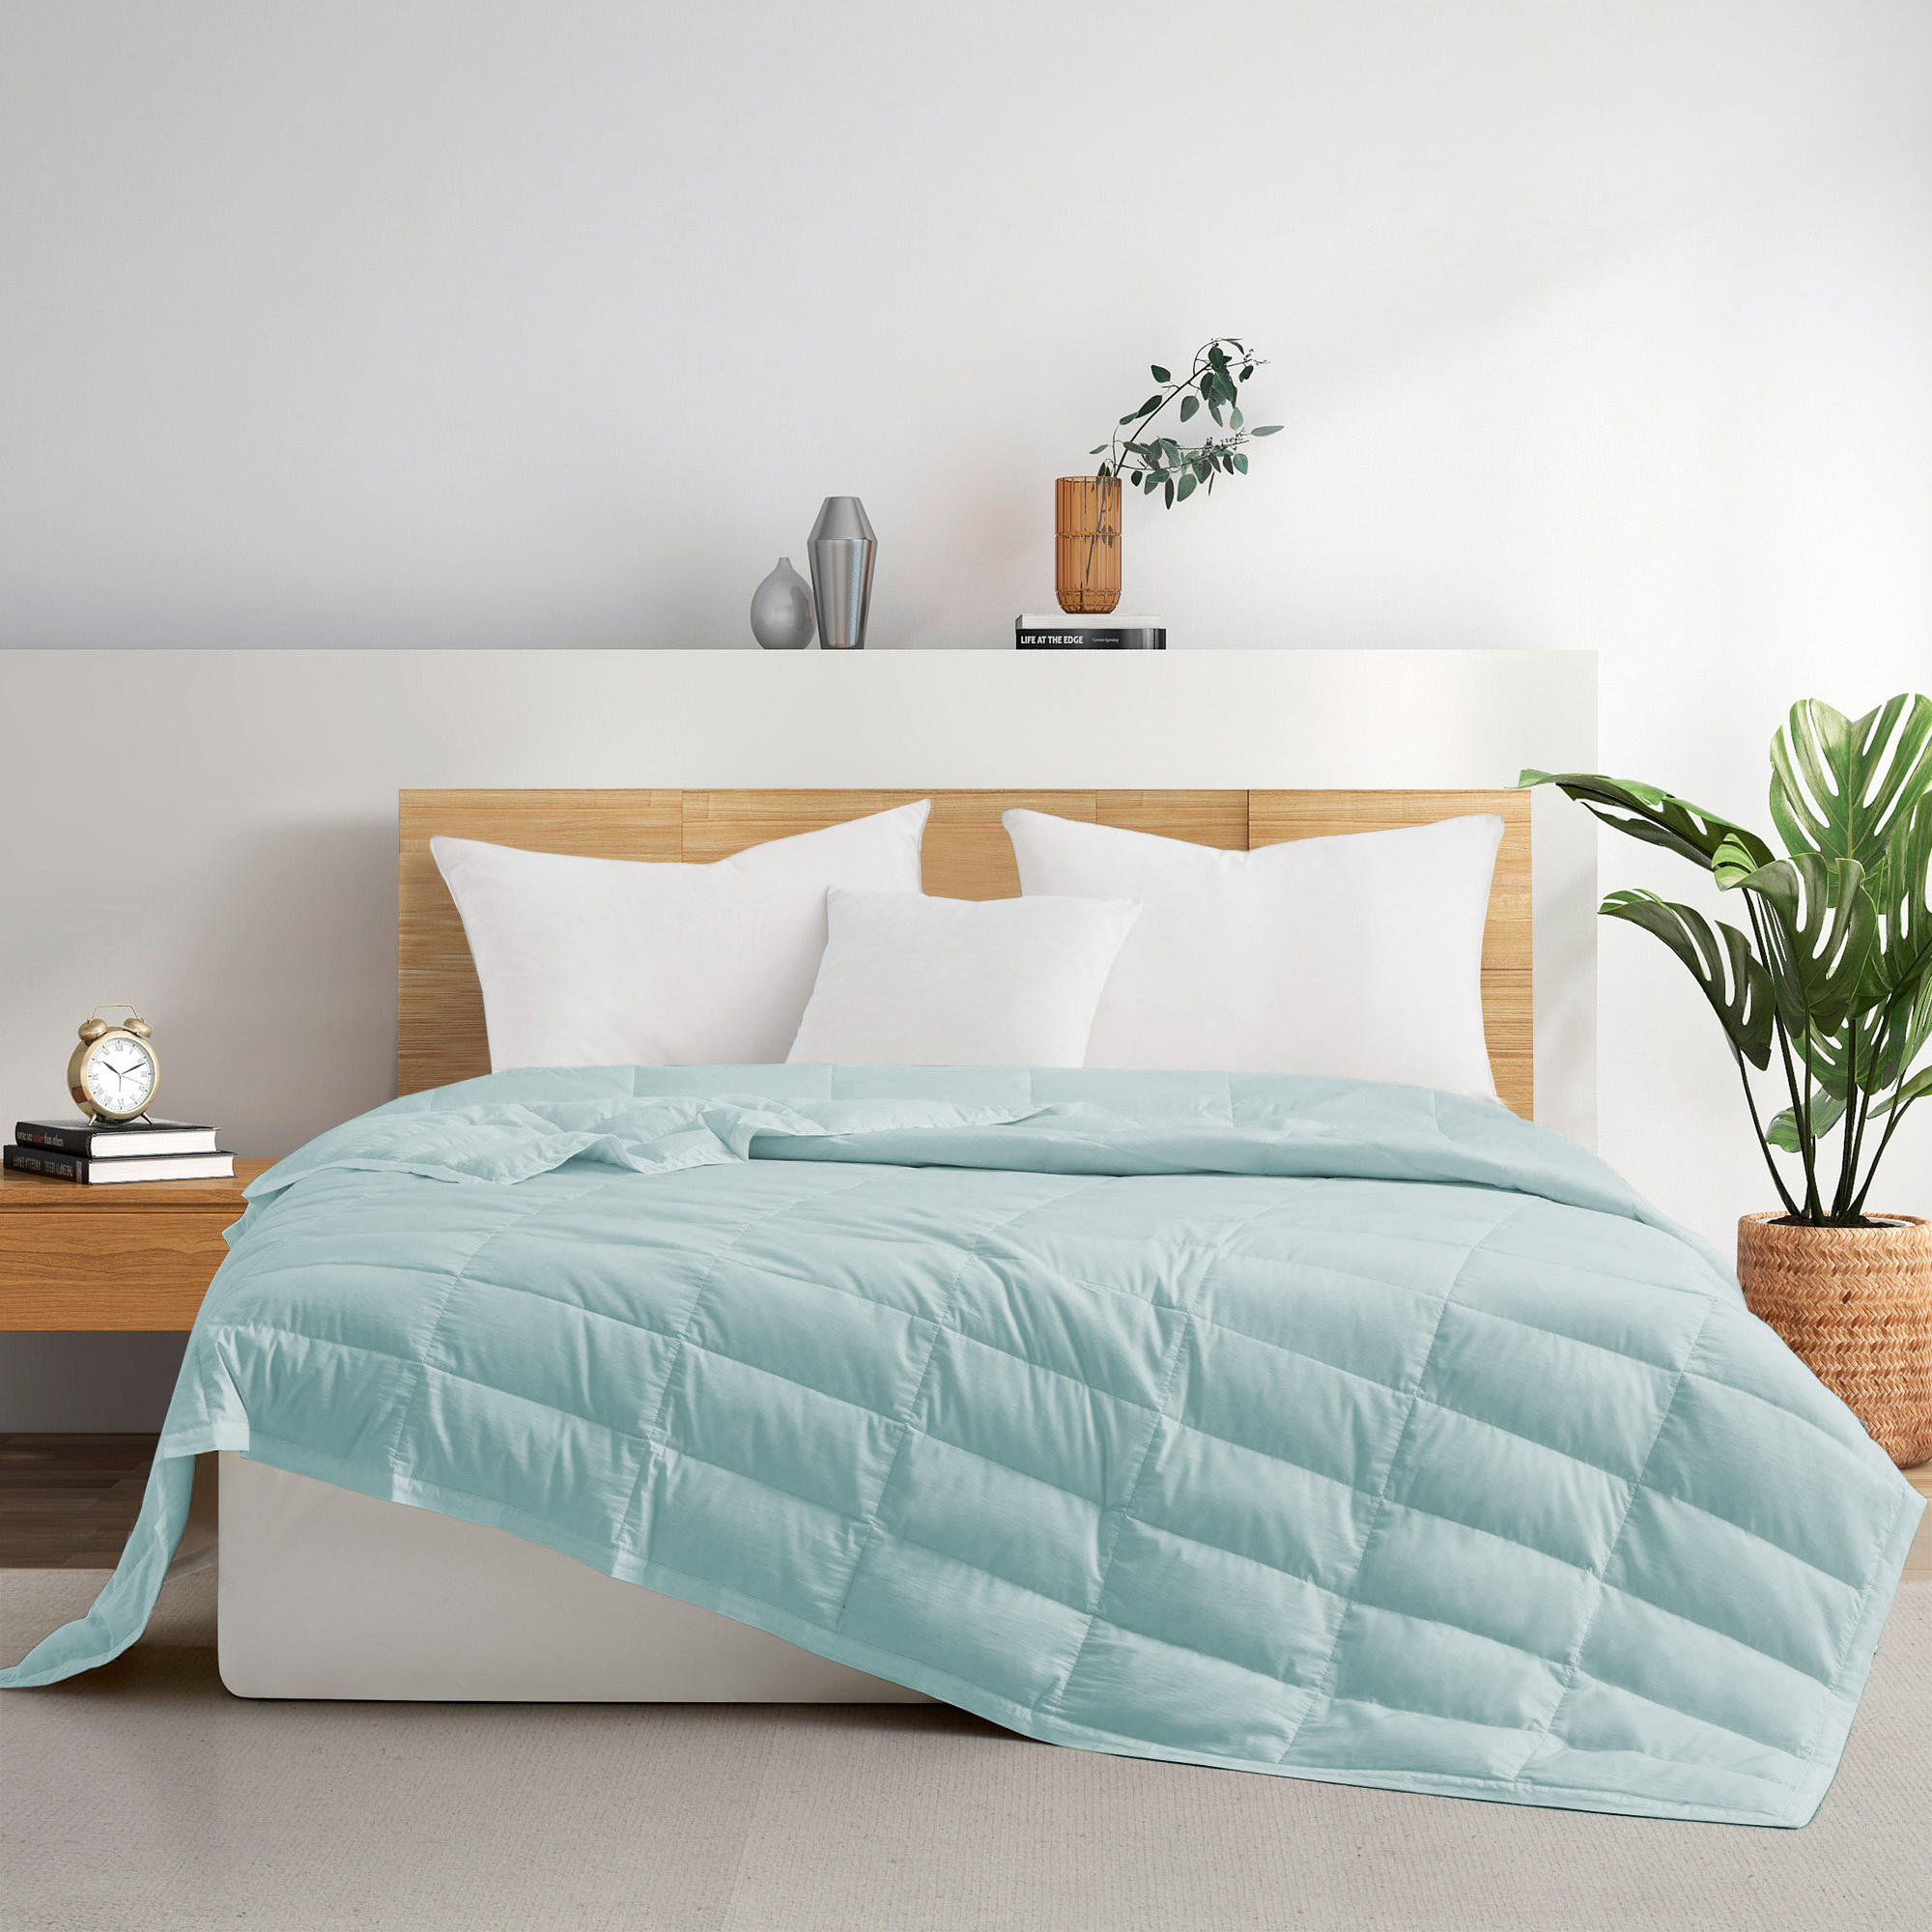 TENCELâ¢ Lyocell Lightweight Cooling Down Blanket-Luxurious Comfort Summer Blanket - Dusty Aqua, Full/Queen